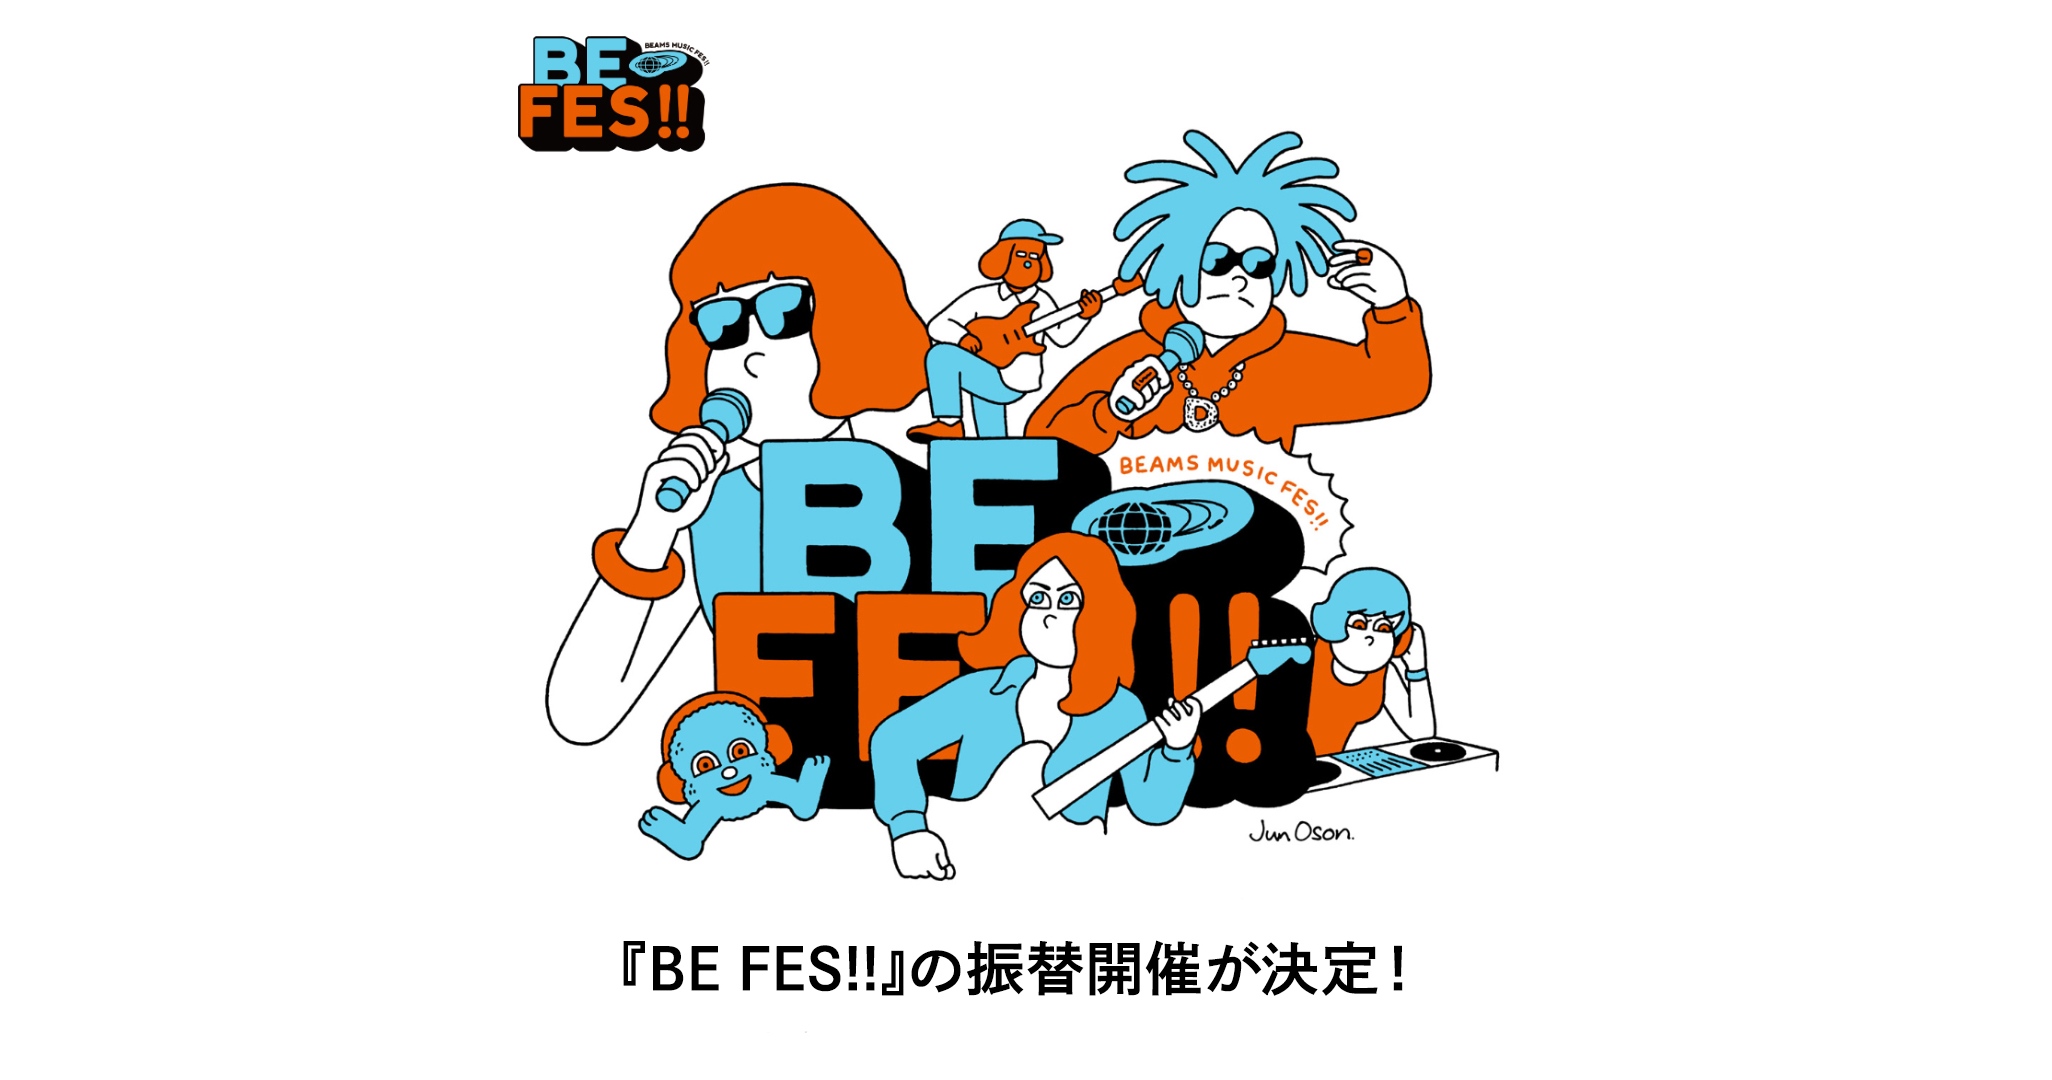 ビームスがプロデュースする音楽フェス『BE FES!!』1